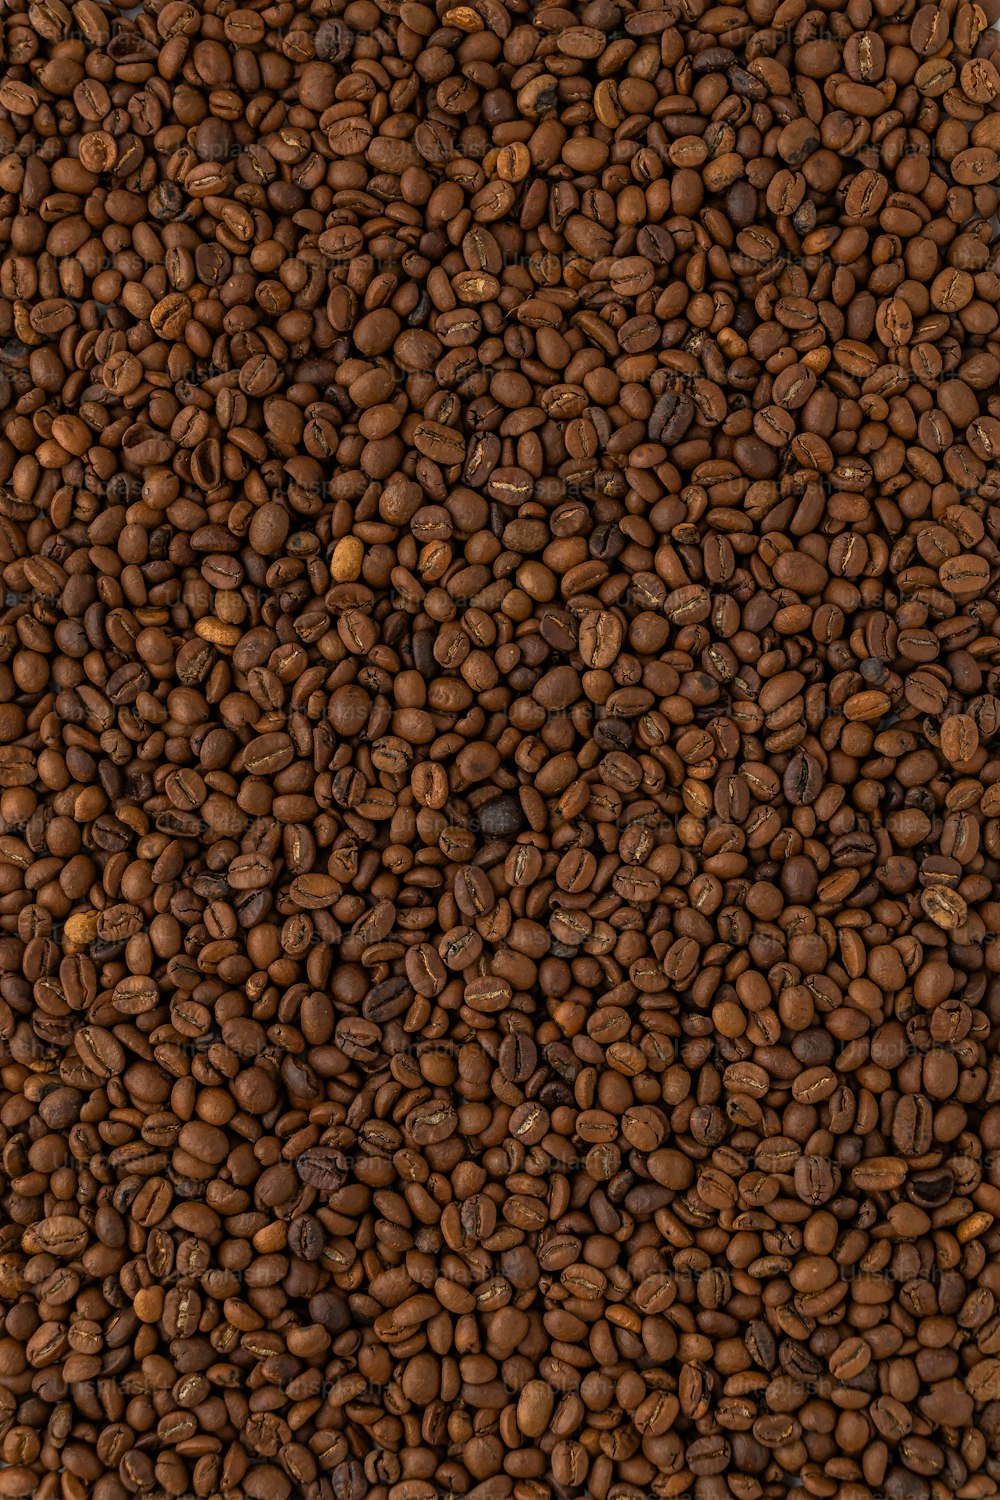 Une pile de grains de café est montrée sur cette image